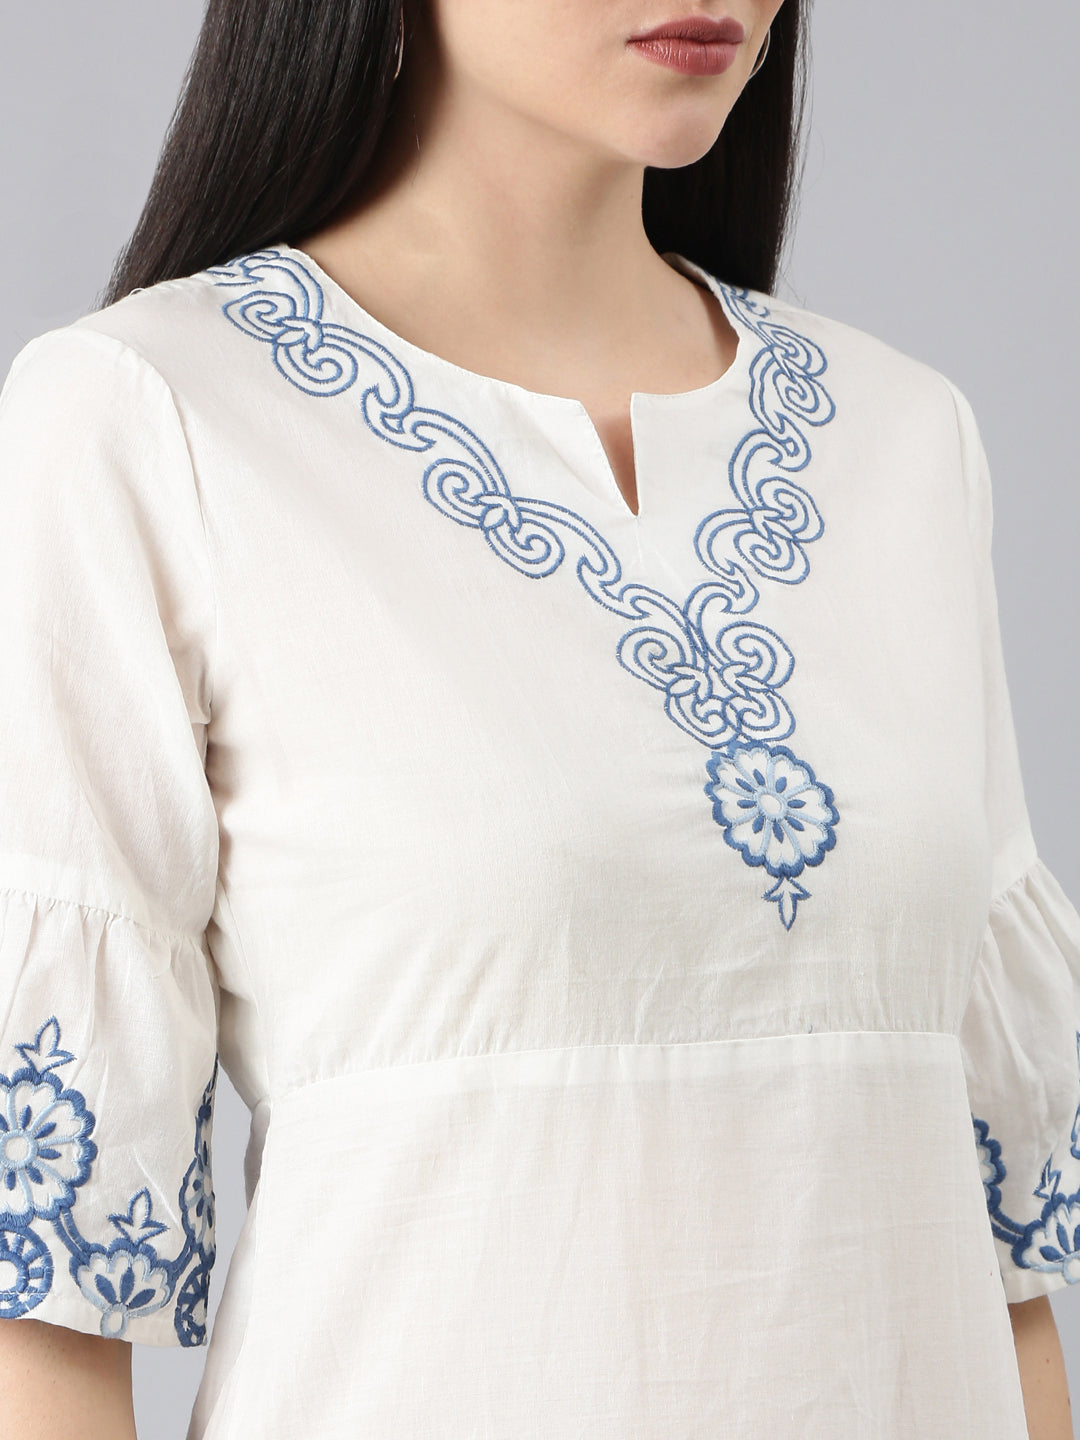 Women White Printed A-Line Dress